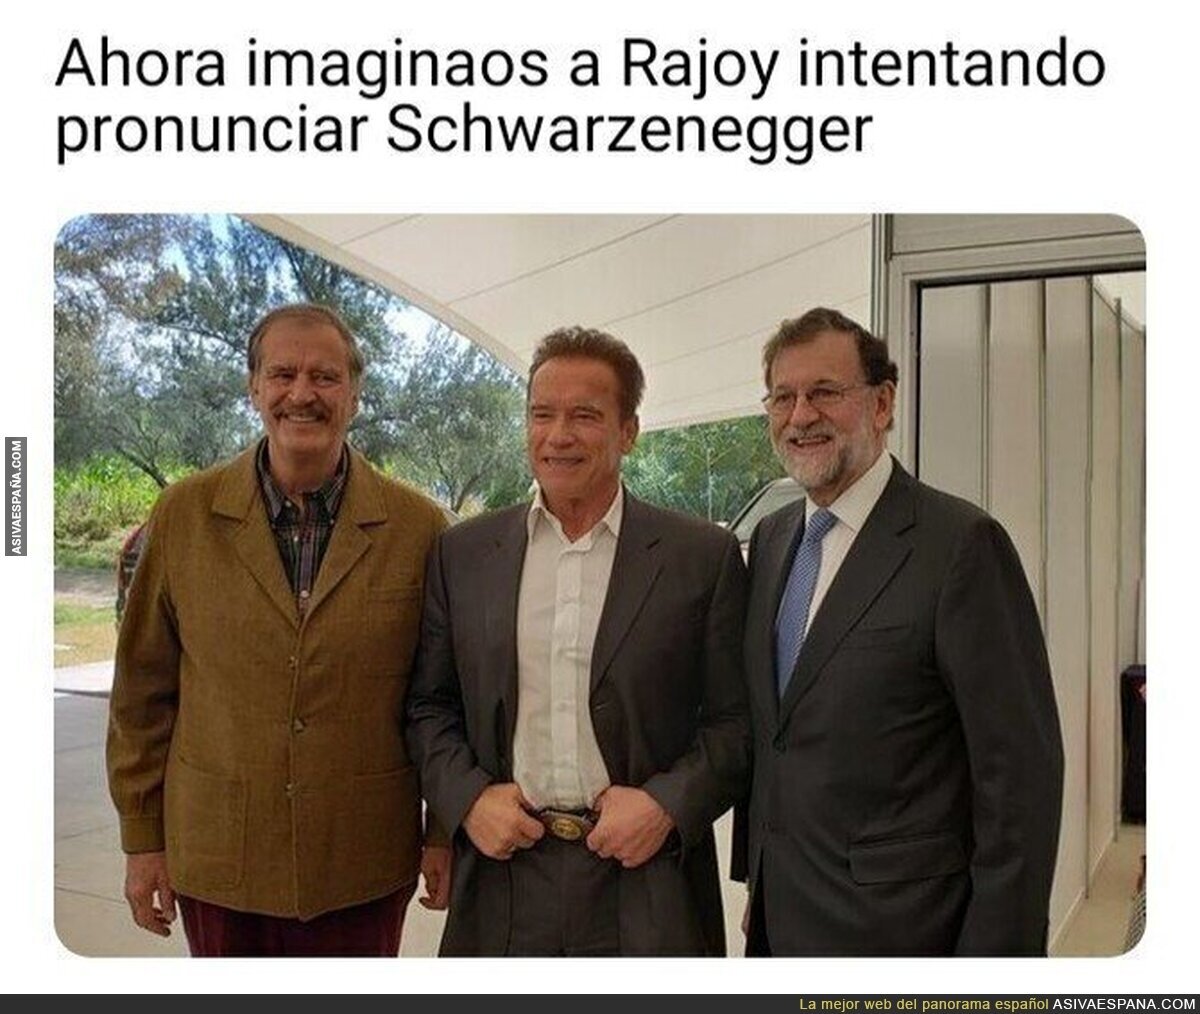 Una gran misión para Rajoy